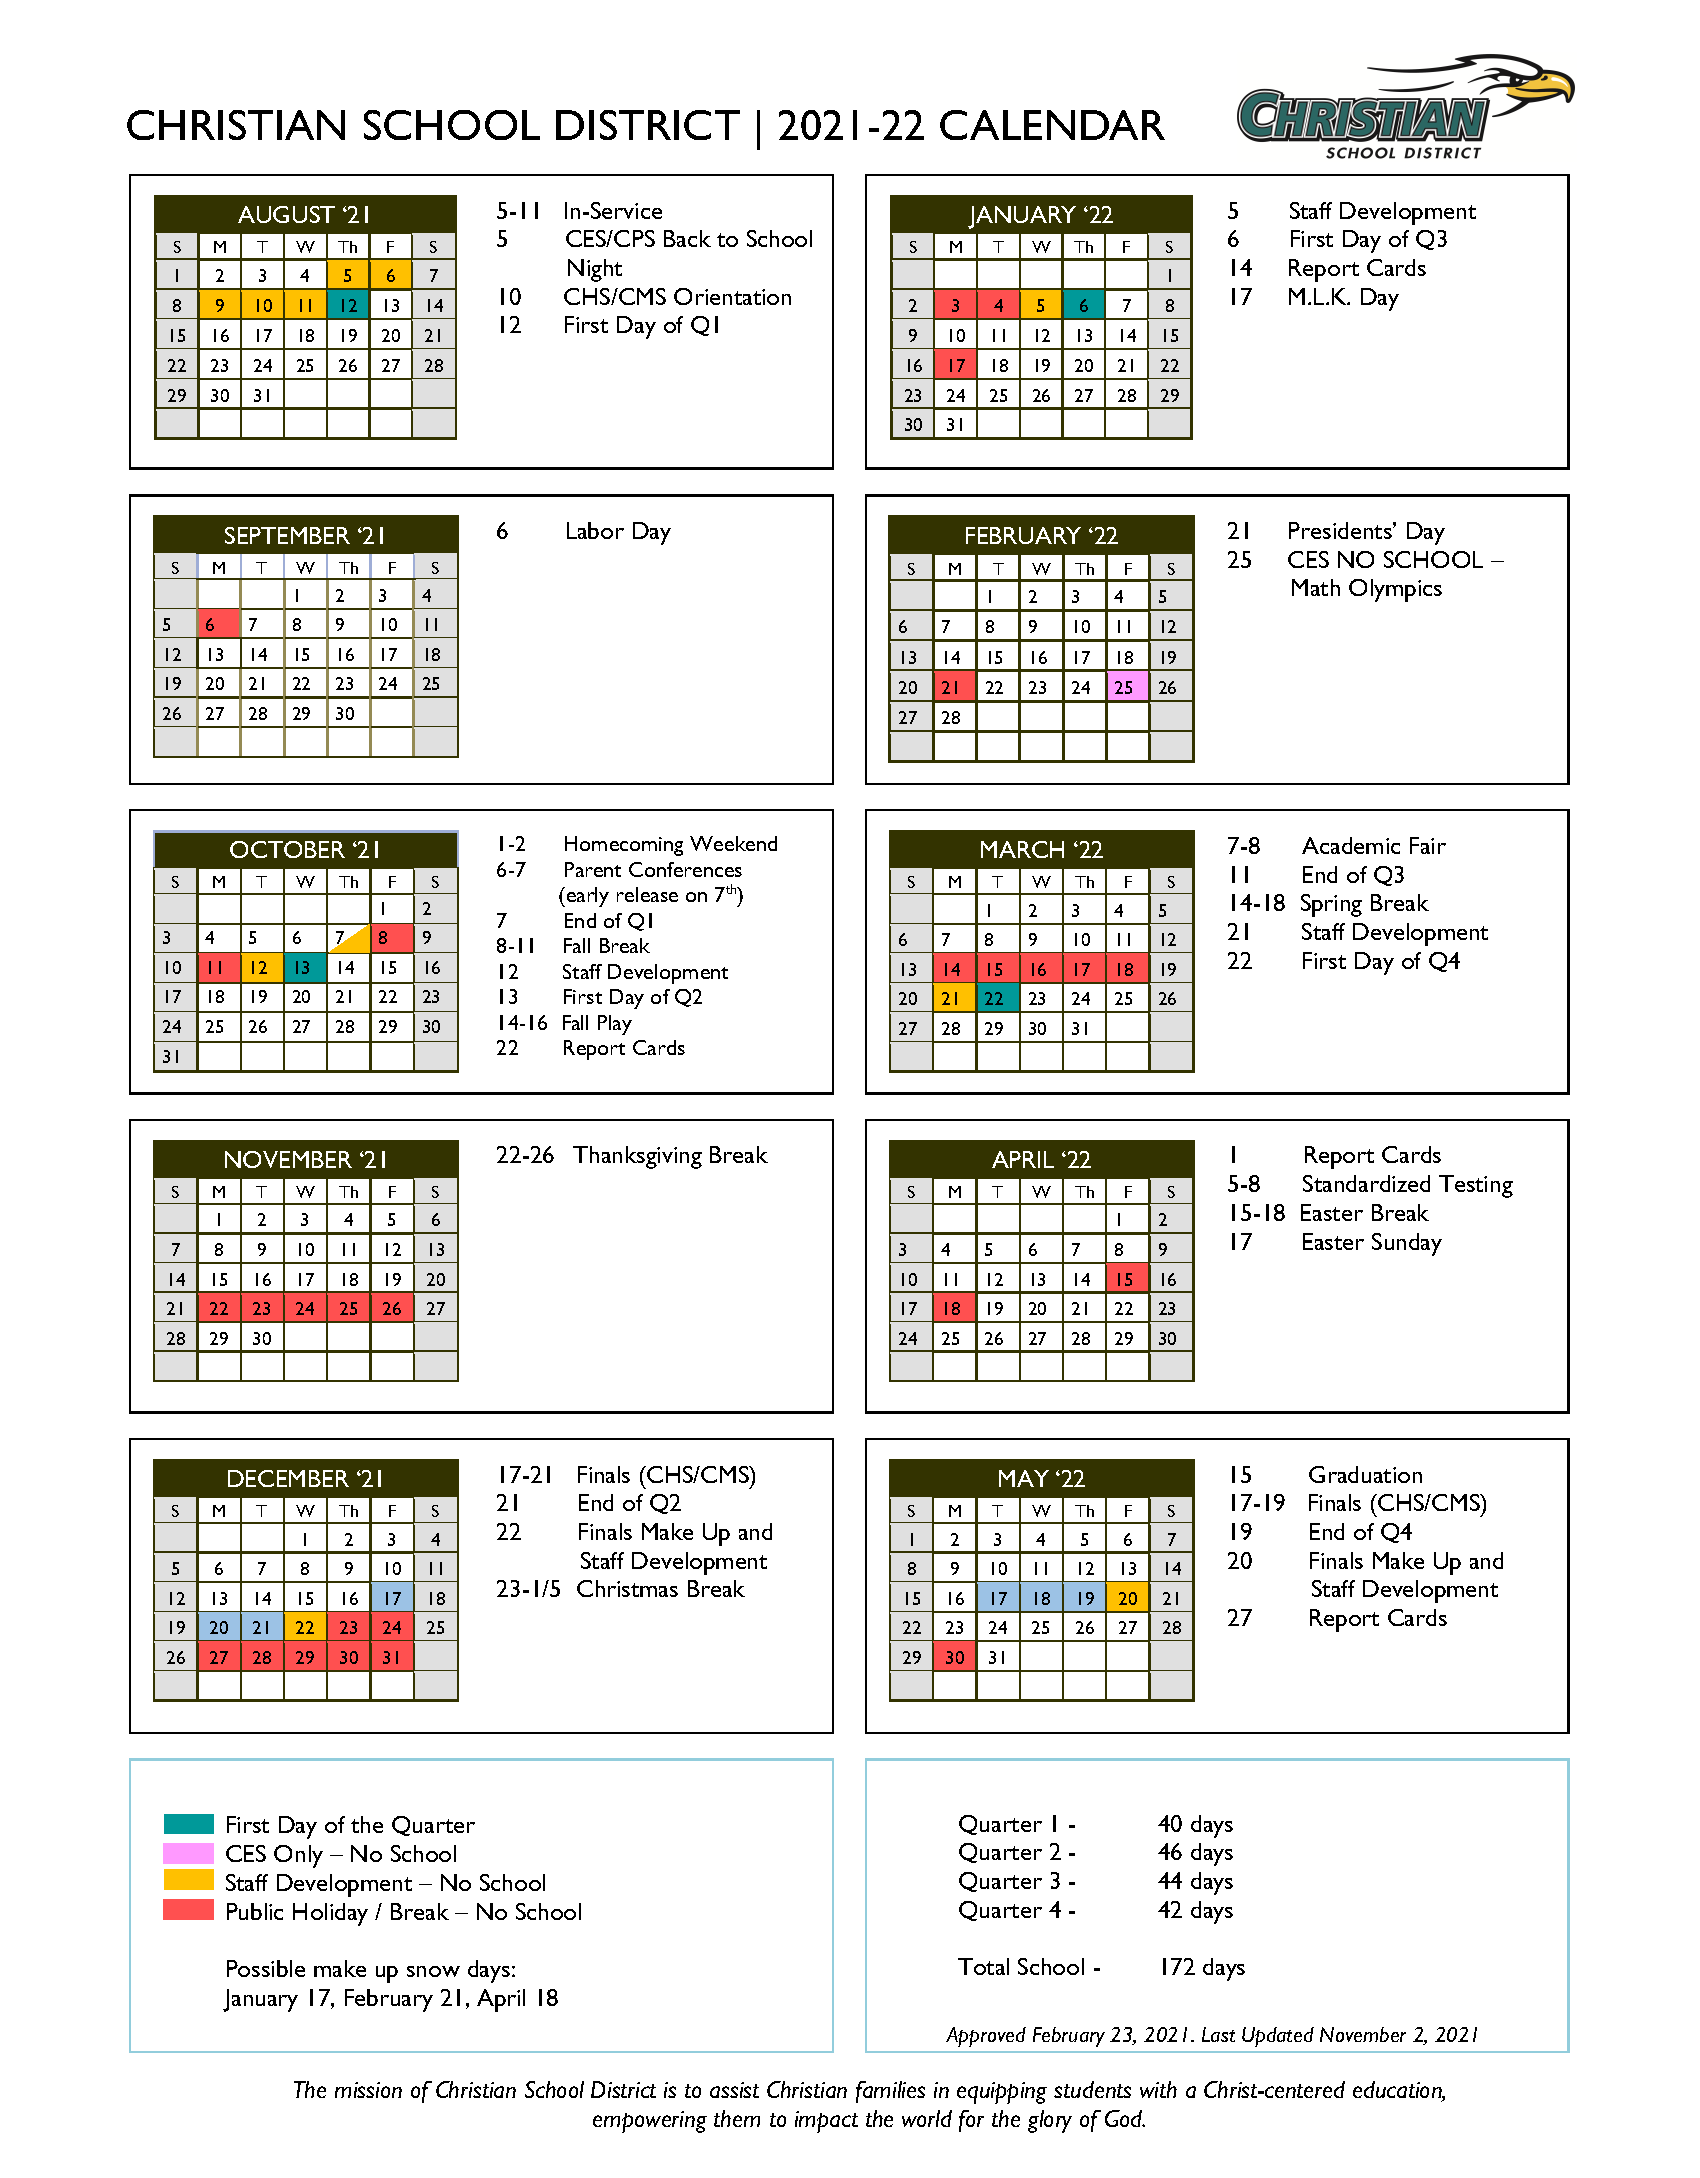 Cms 2022 Calendar 2021-22 Annual Academic Calendar - Christian School District